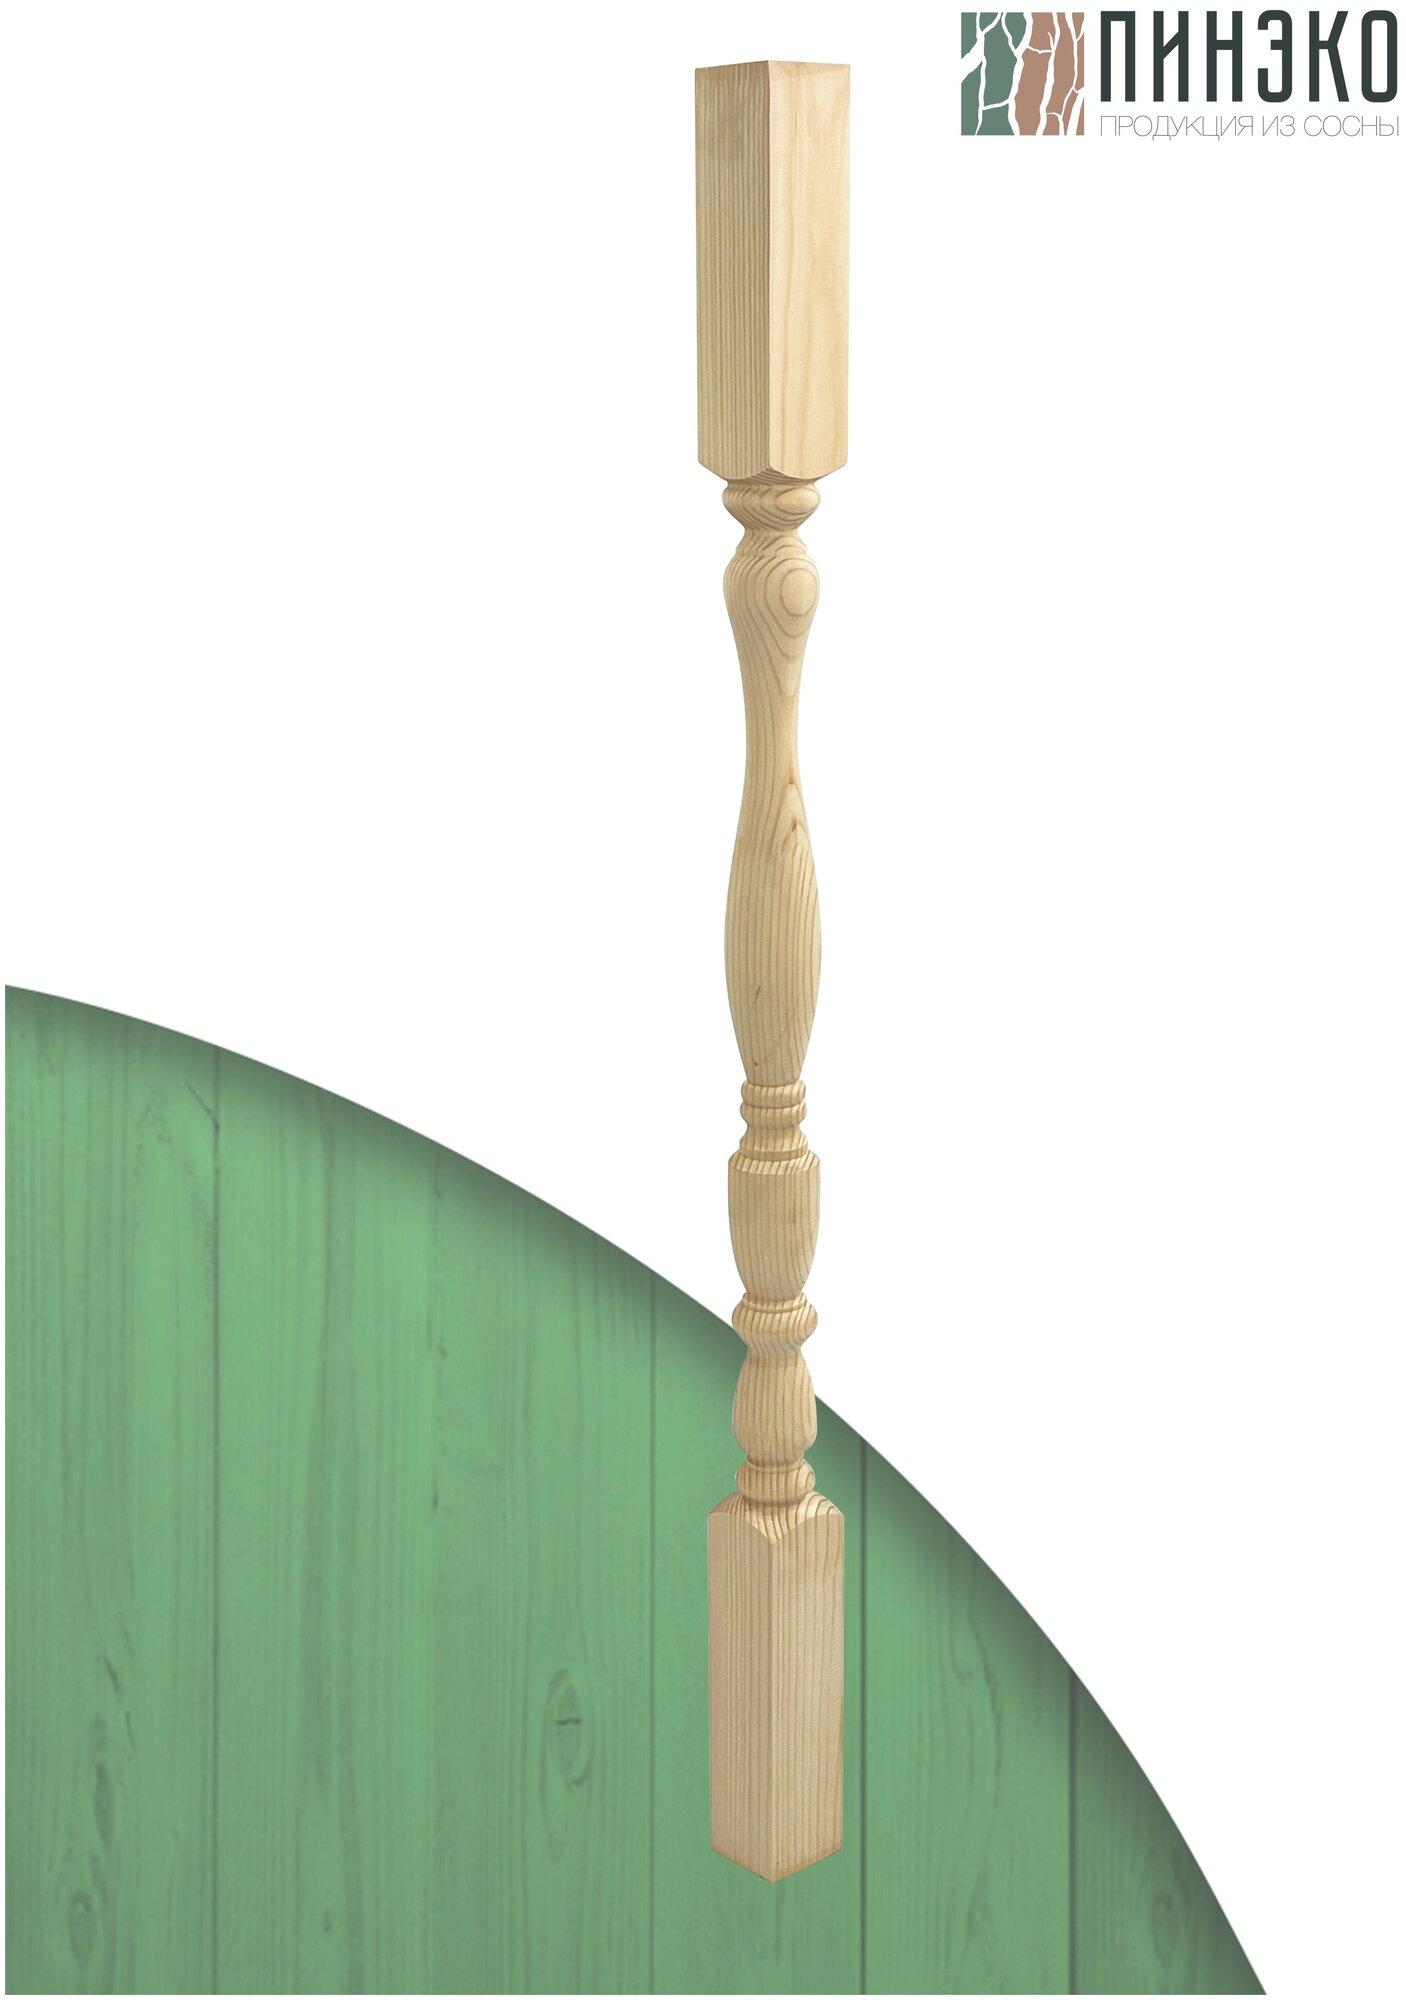 Набор 4 балясины деревянные 900х50х50мм / сращенная / ограждение для лестницы балюстрада из сосны премиум АА модель 50AN24